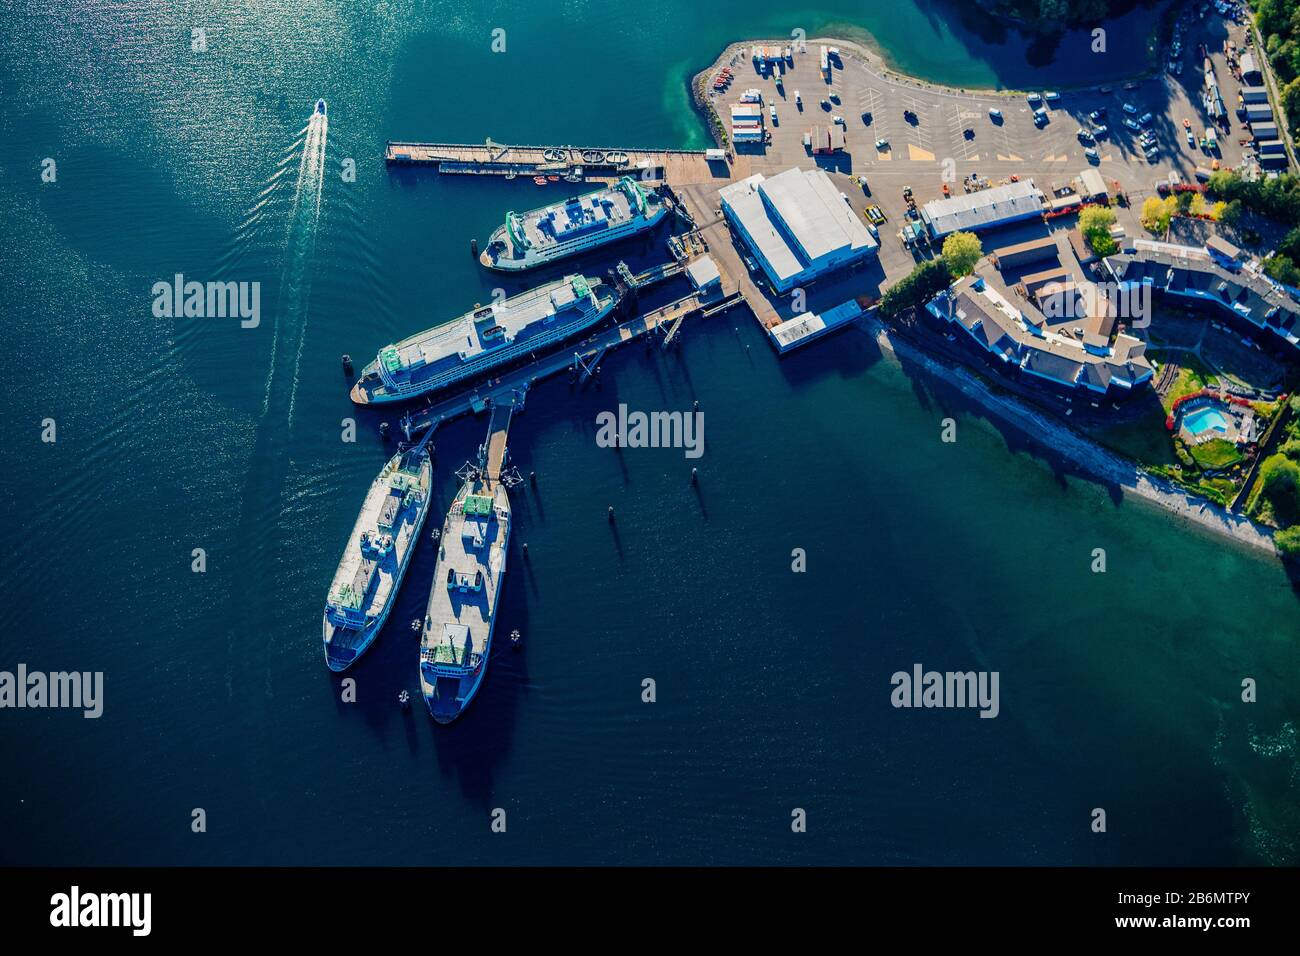 Aerial view of Bainbridge Island ferry terminal, Lake Union, Washington State, USA Stock Photo